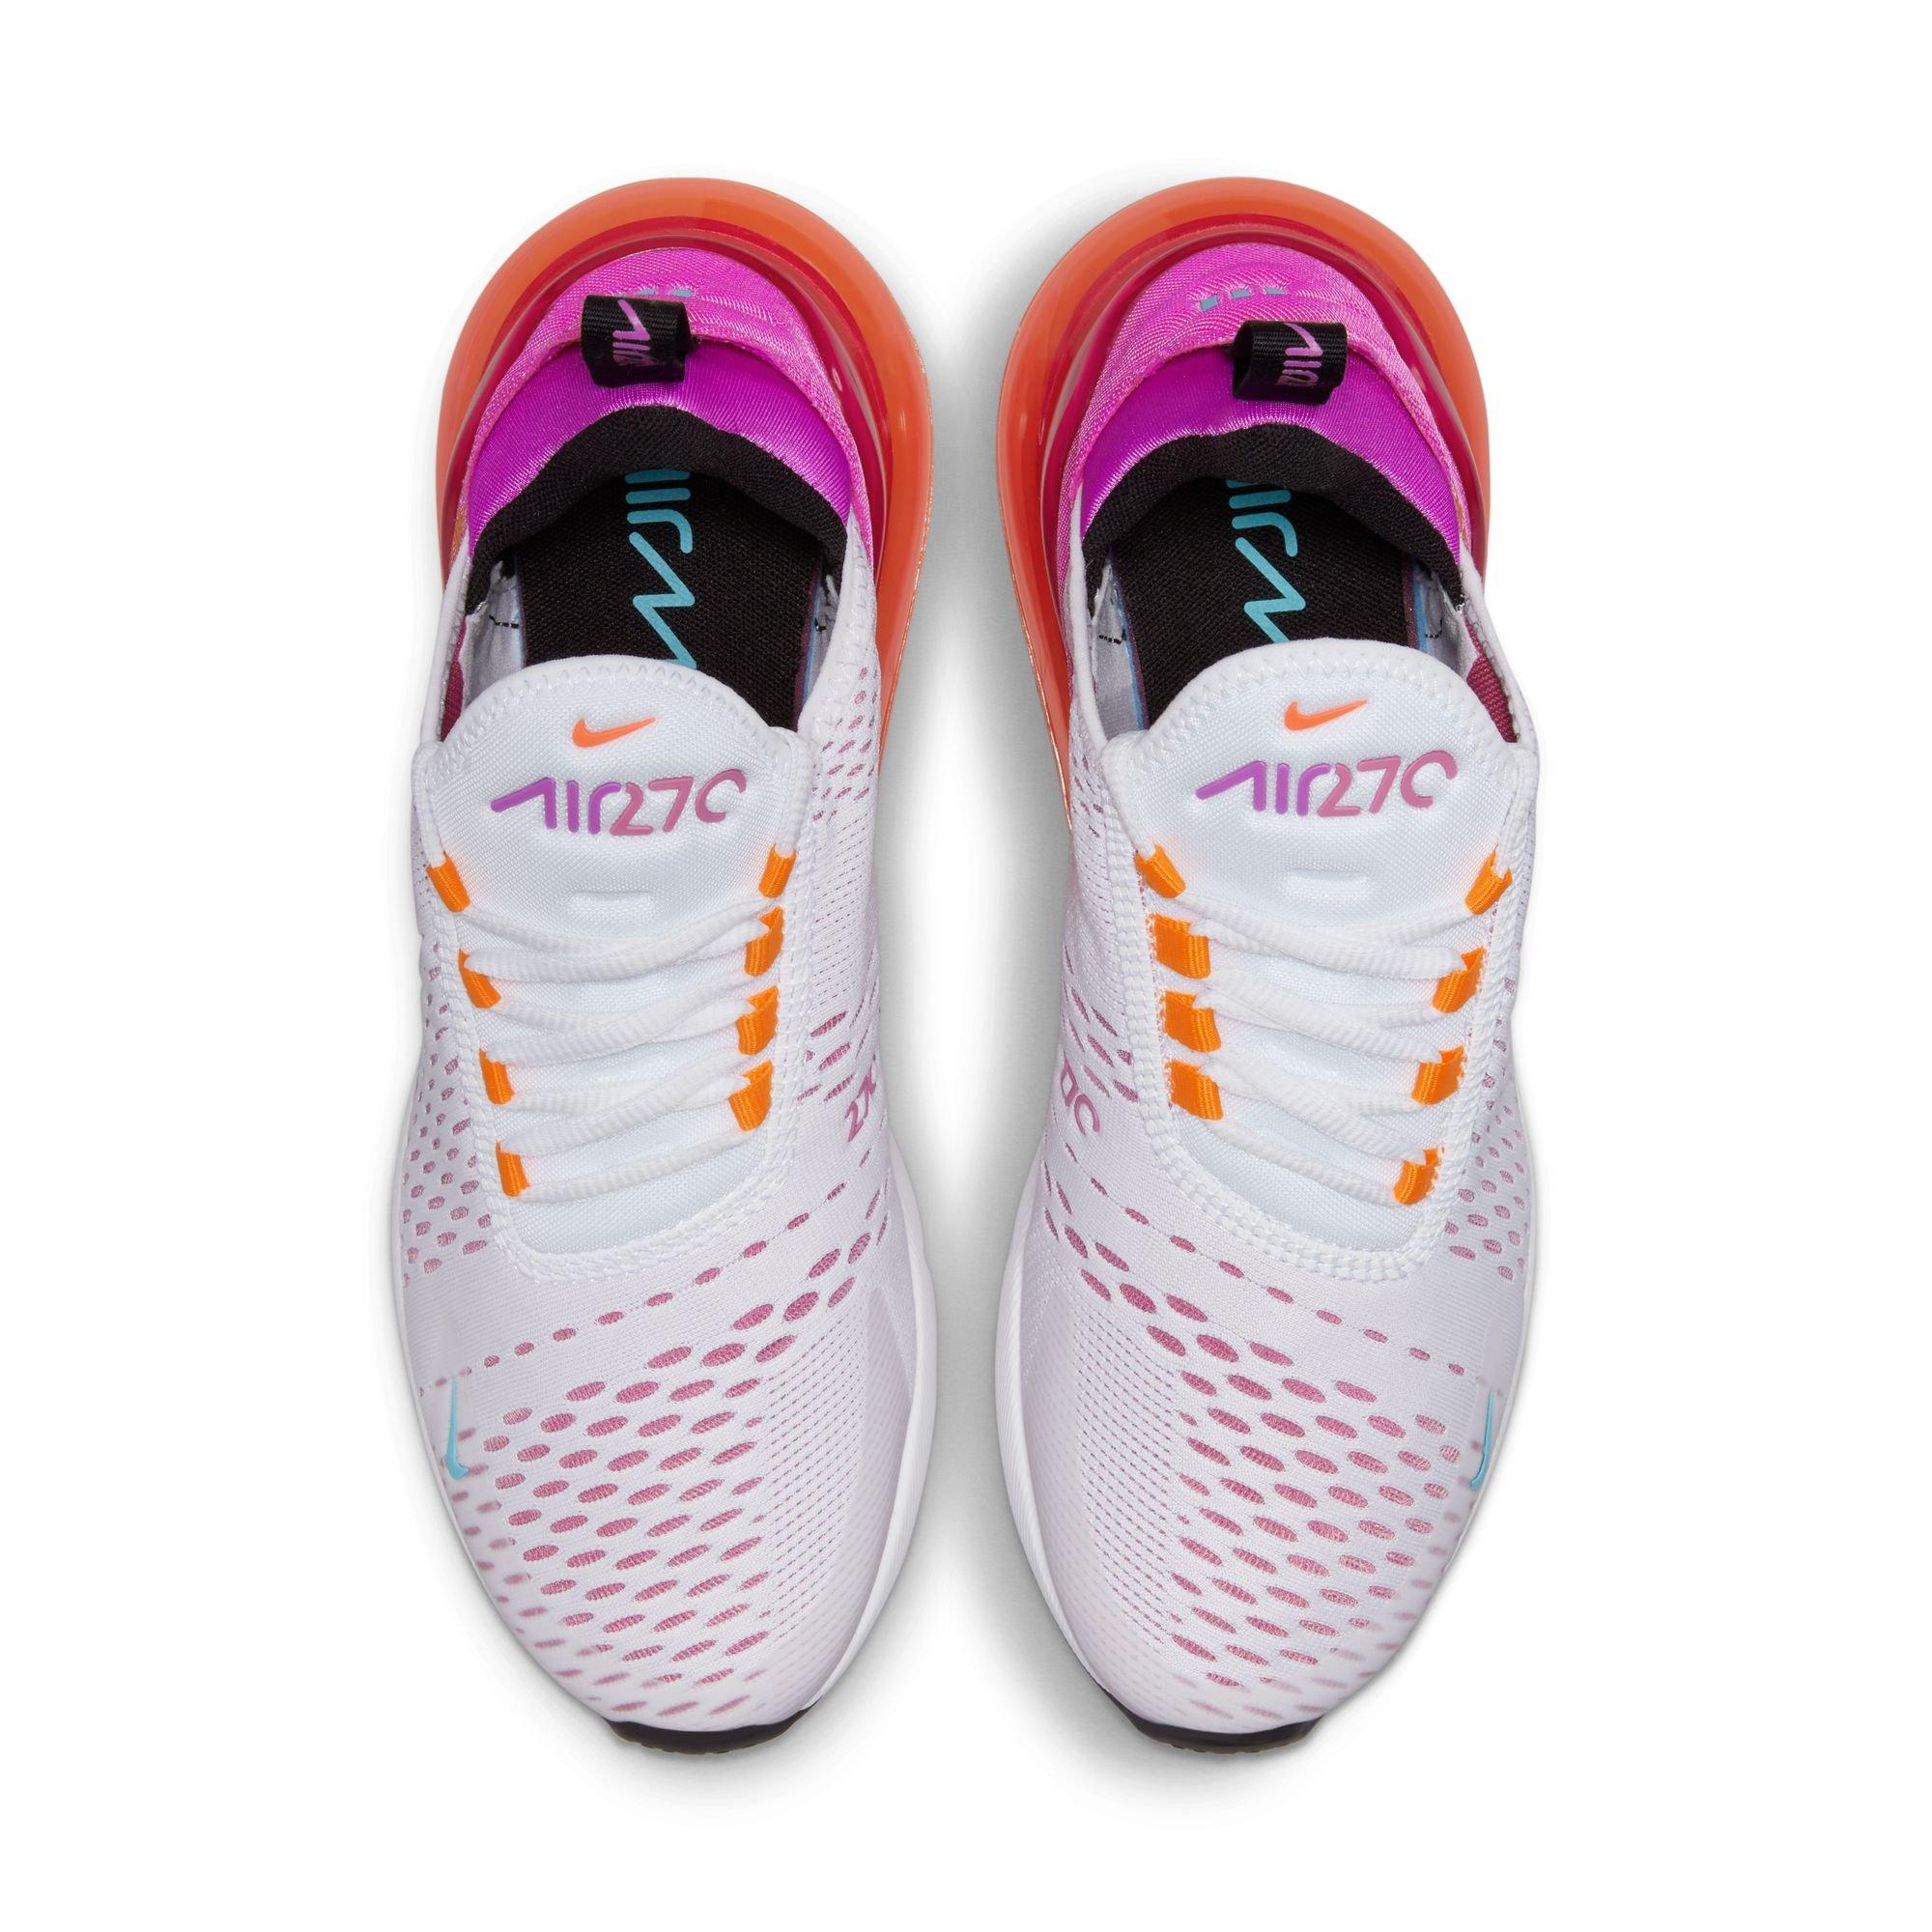 Nike Women's Air Max 270 Low-Top Sneakers